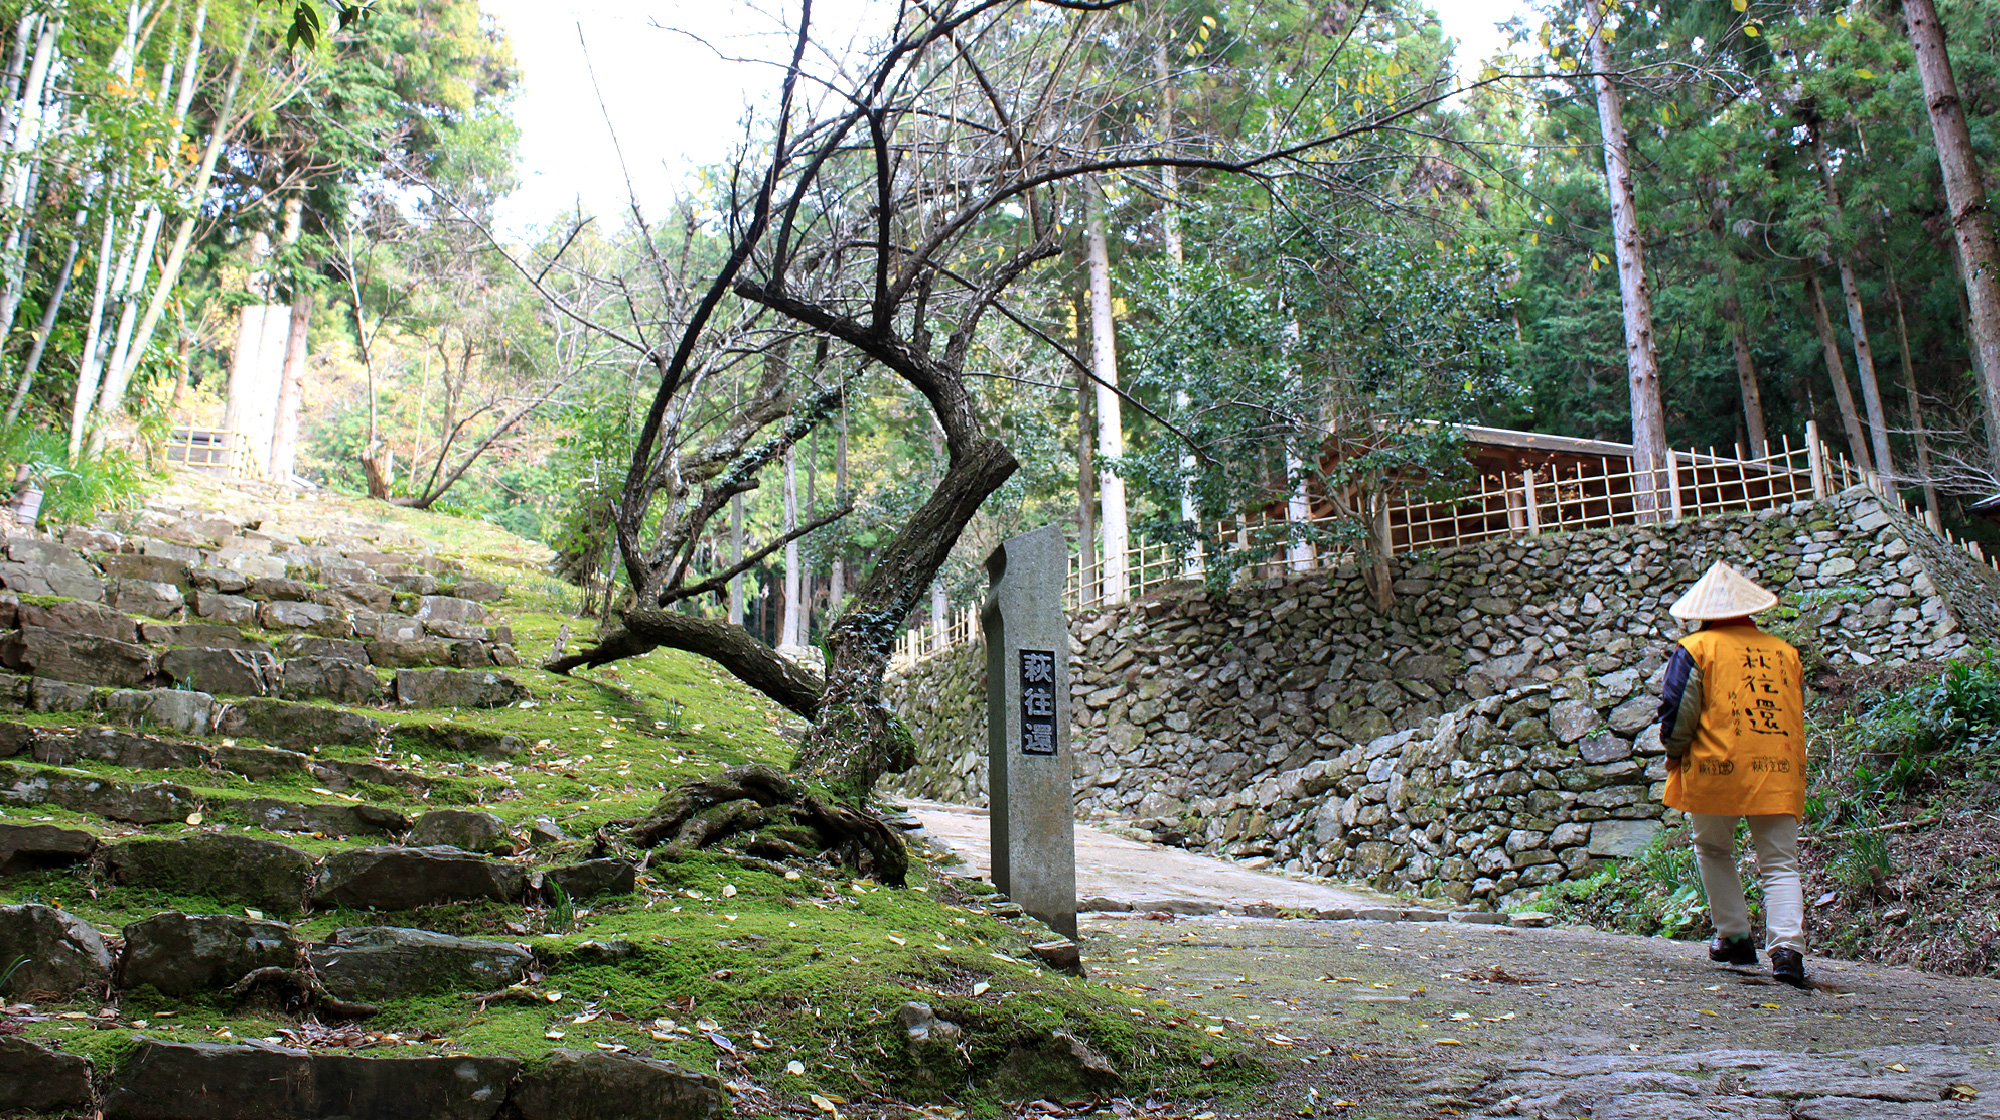 Historical Road of Hagiokan